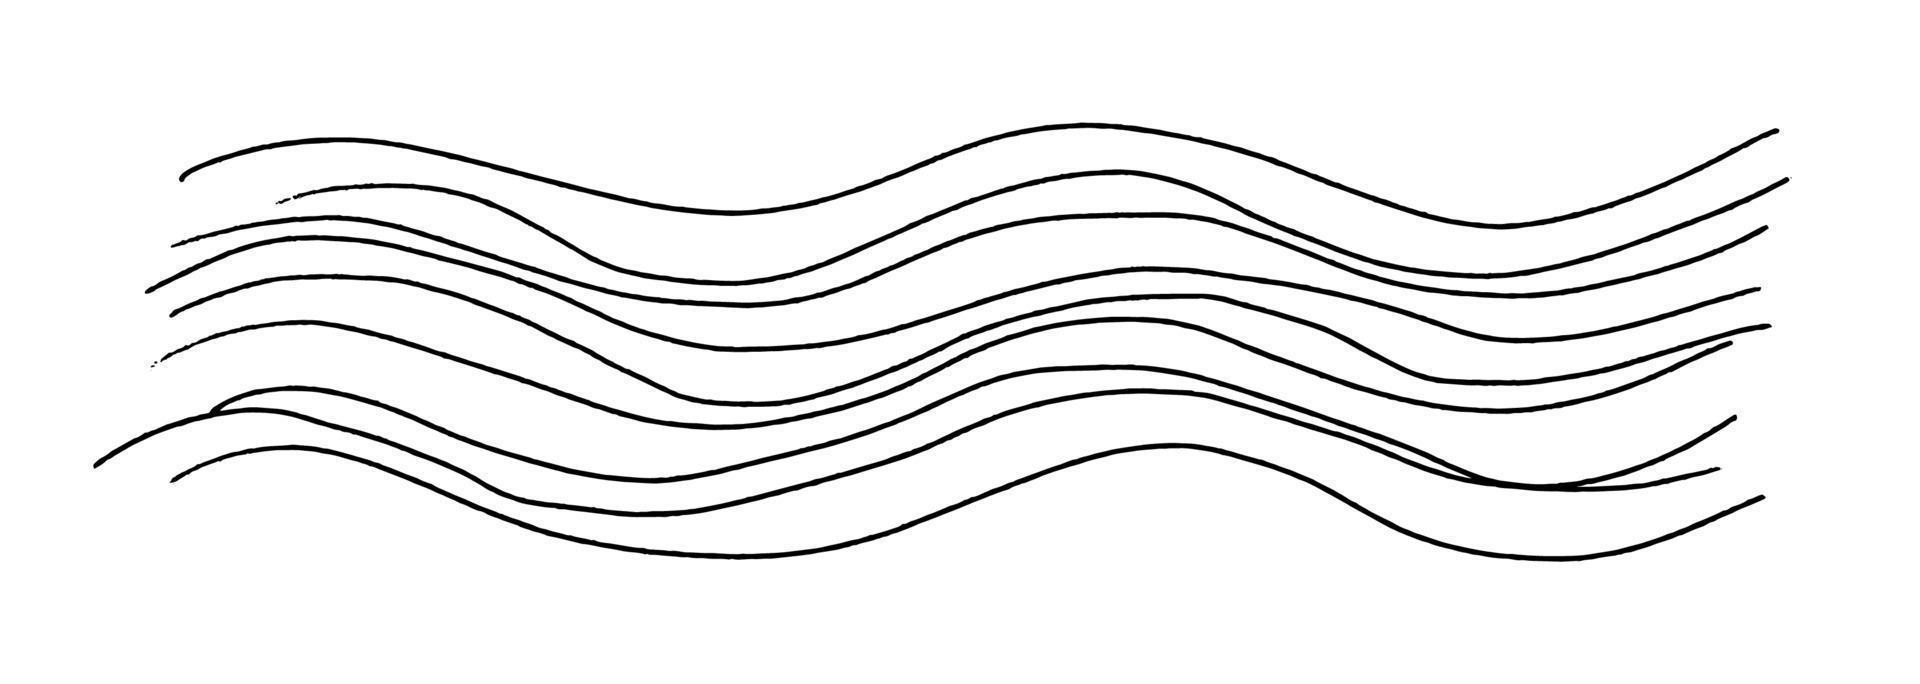 ondas de doodle desenhadas. formas onduladas longas e delgadas desenhadas à mão. textura de fundo horizontal isolada no branco. vetor